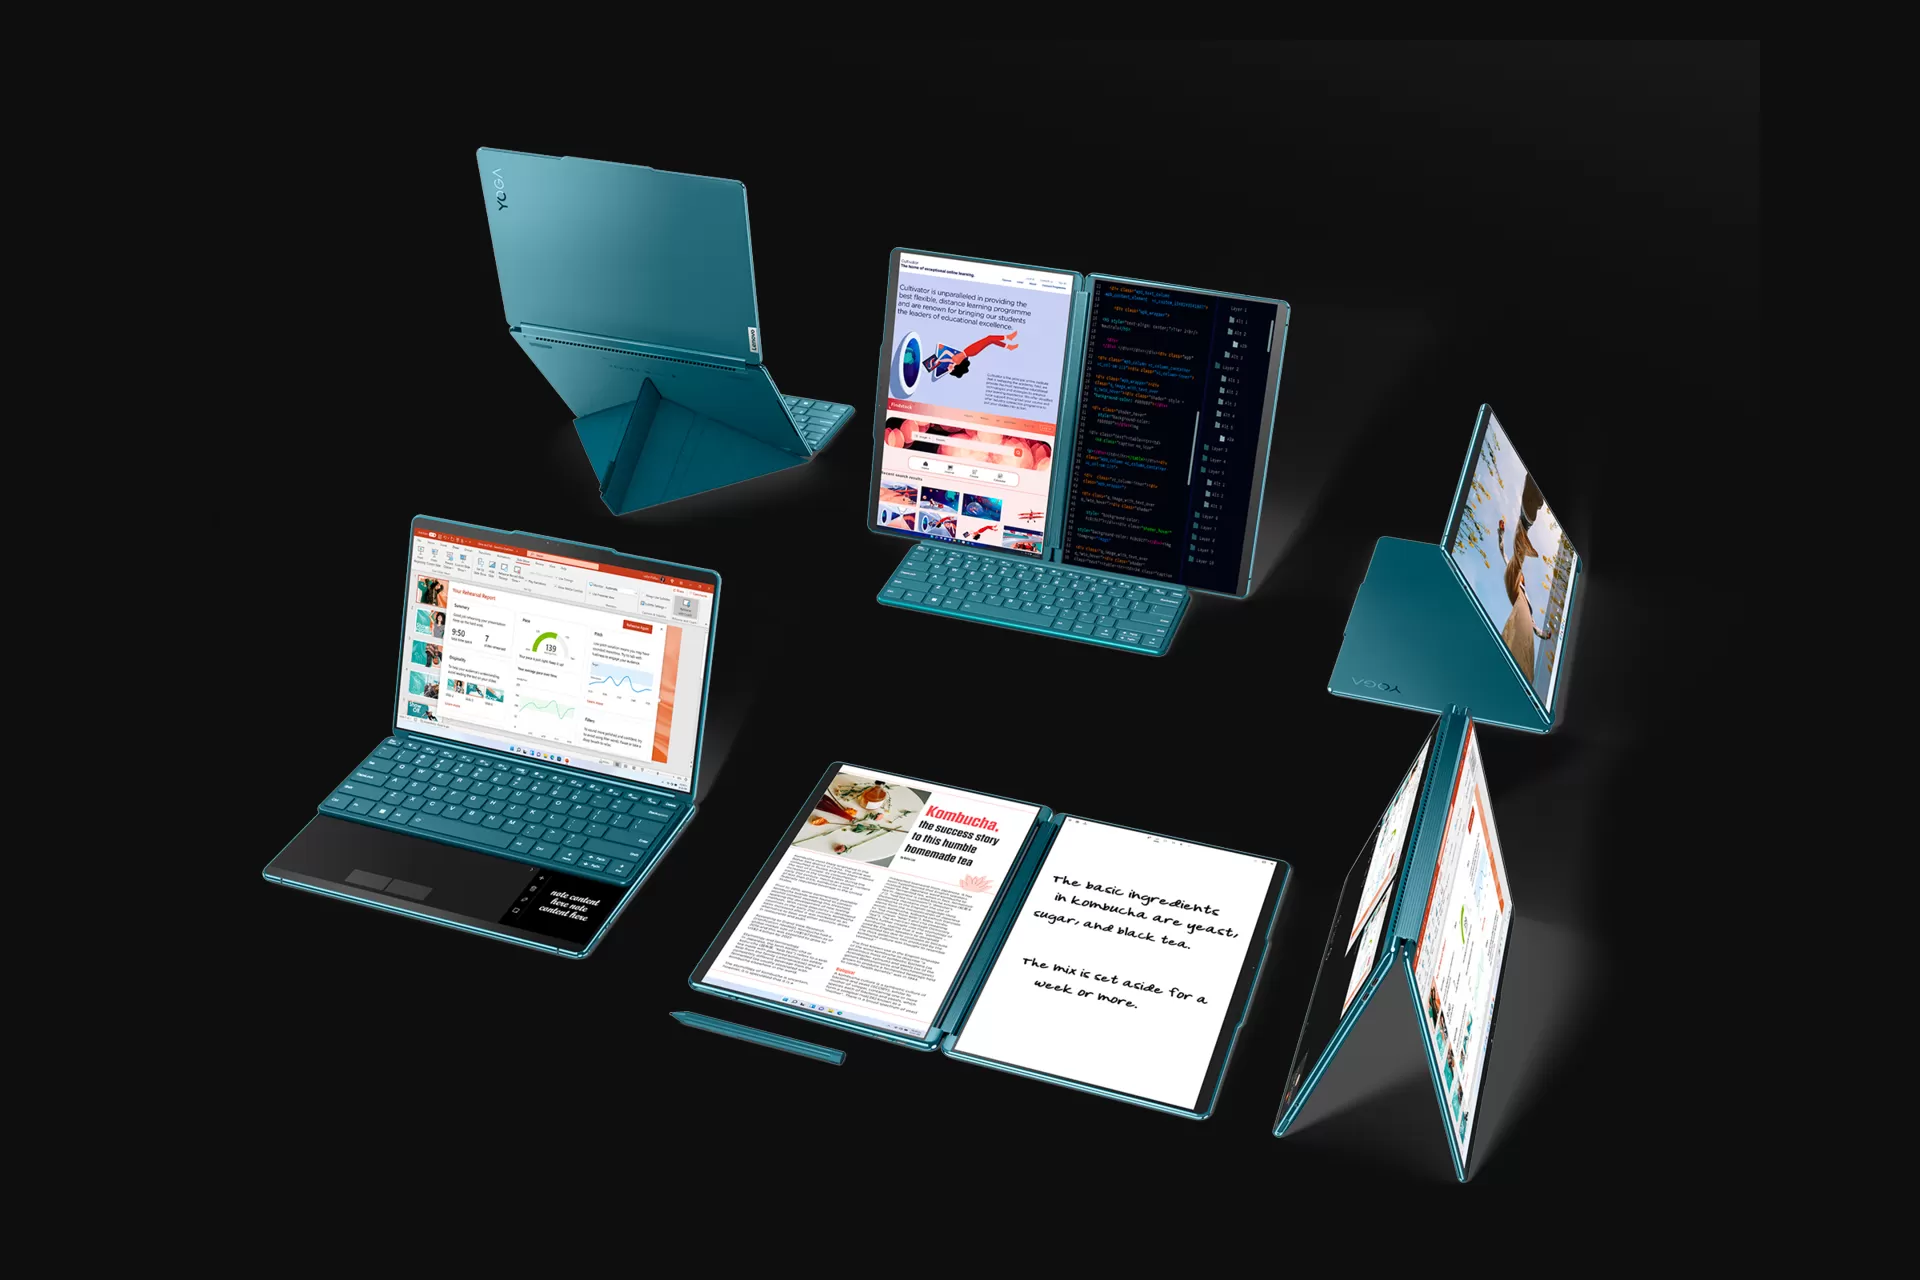 لپ تاپ Yoga Book 9i لنوو با دو نمایشگر OLED رونمایی شد